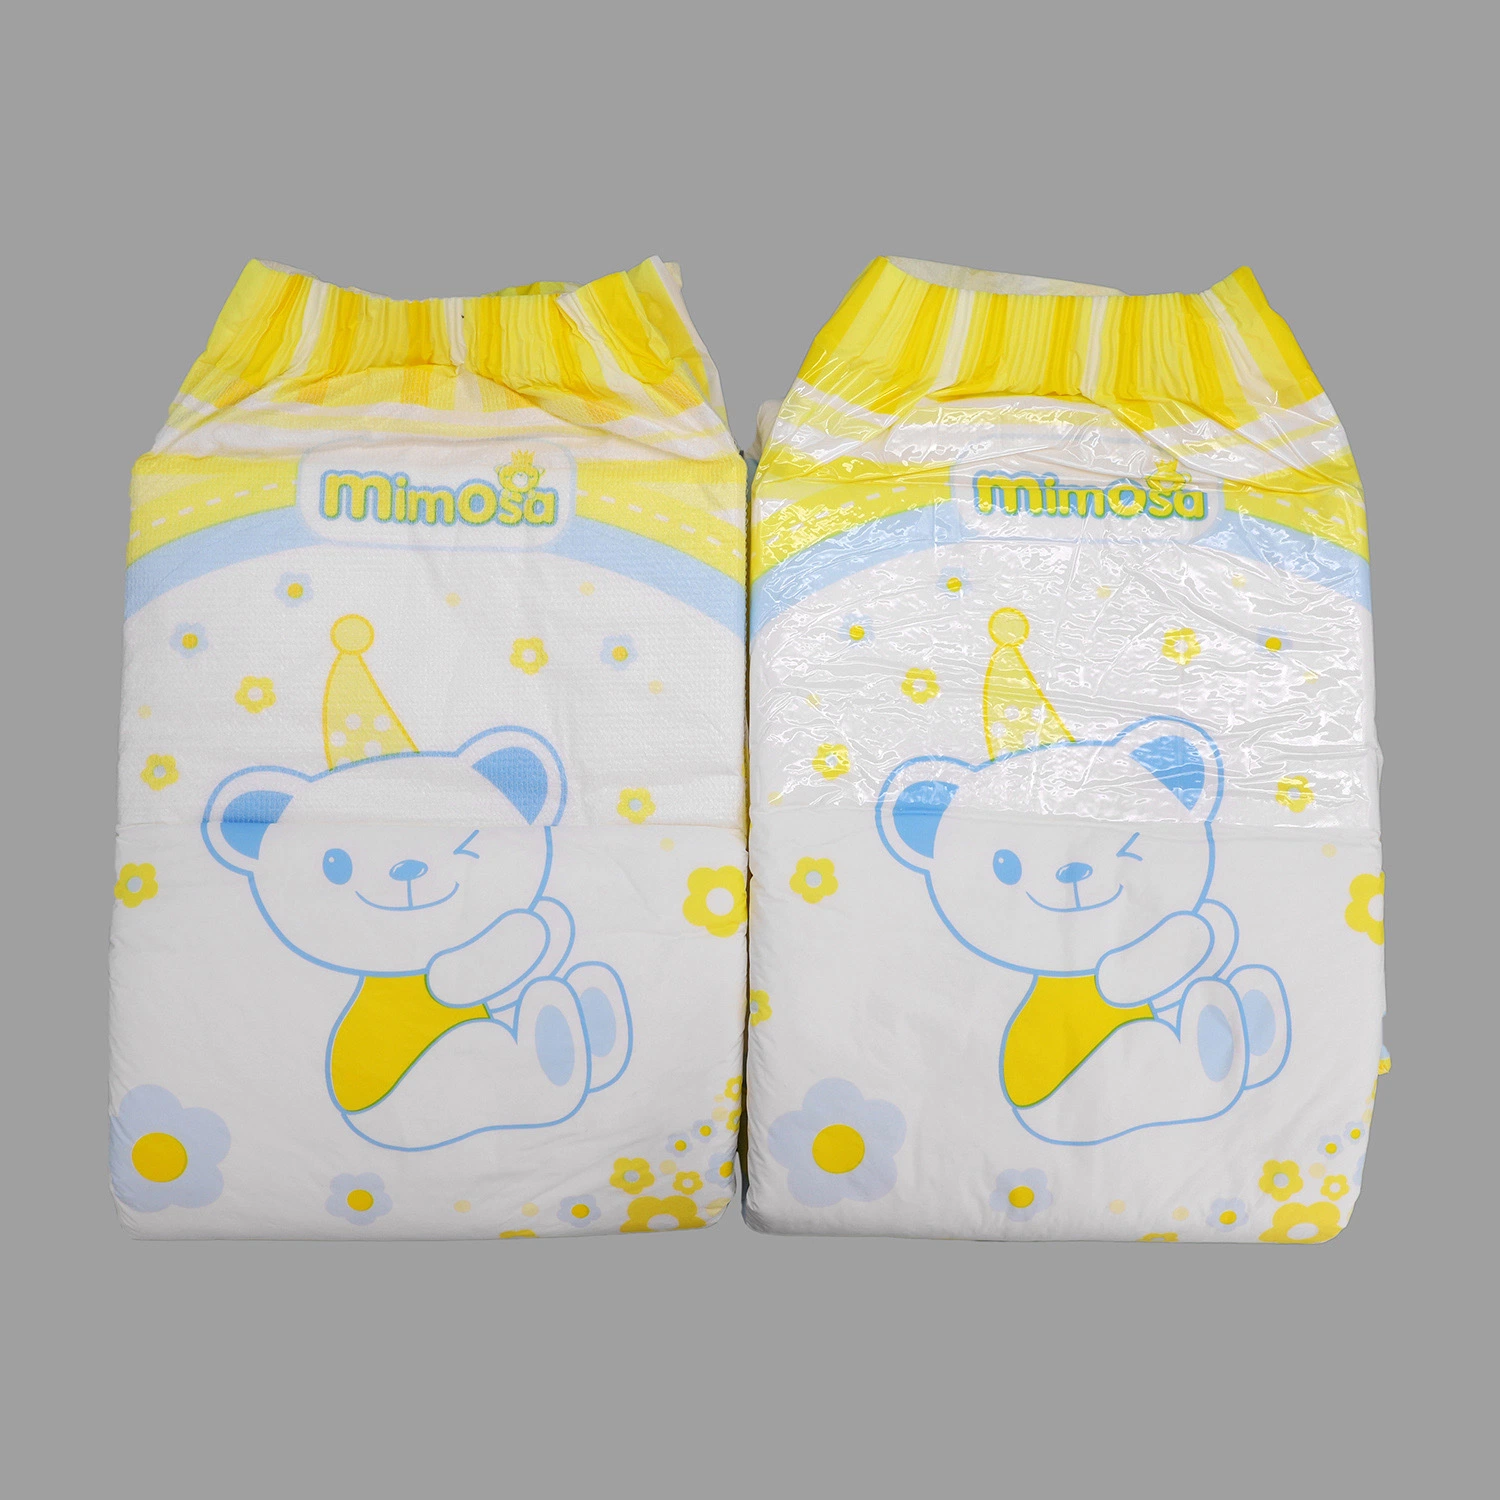 Pañales de plástico desechable para adultos Pull pañales para arriba, gratis adultos pañales pantalones fabricados en China Hot Products